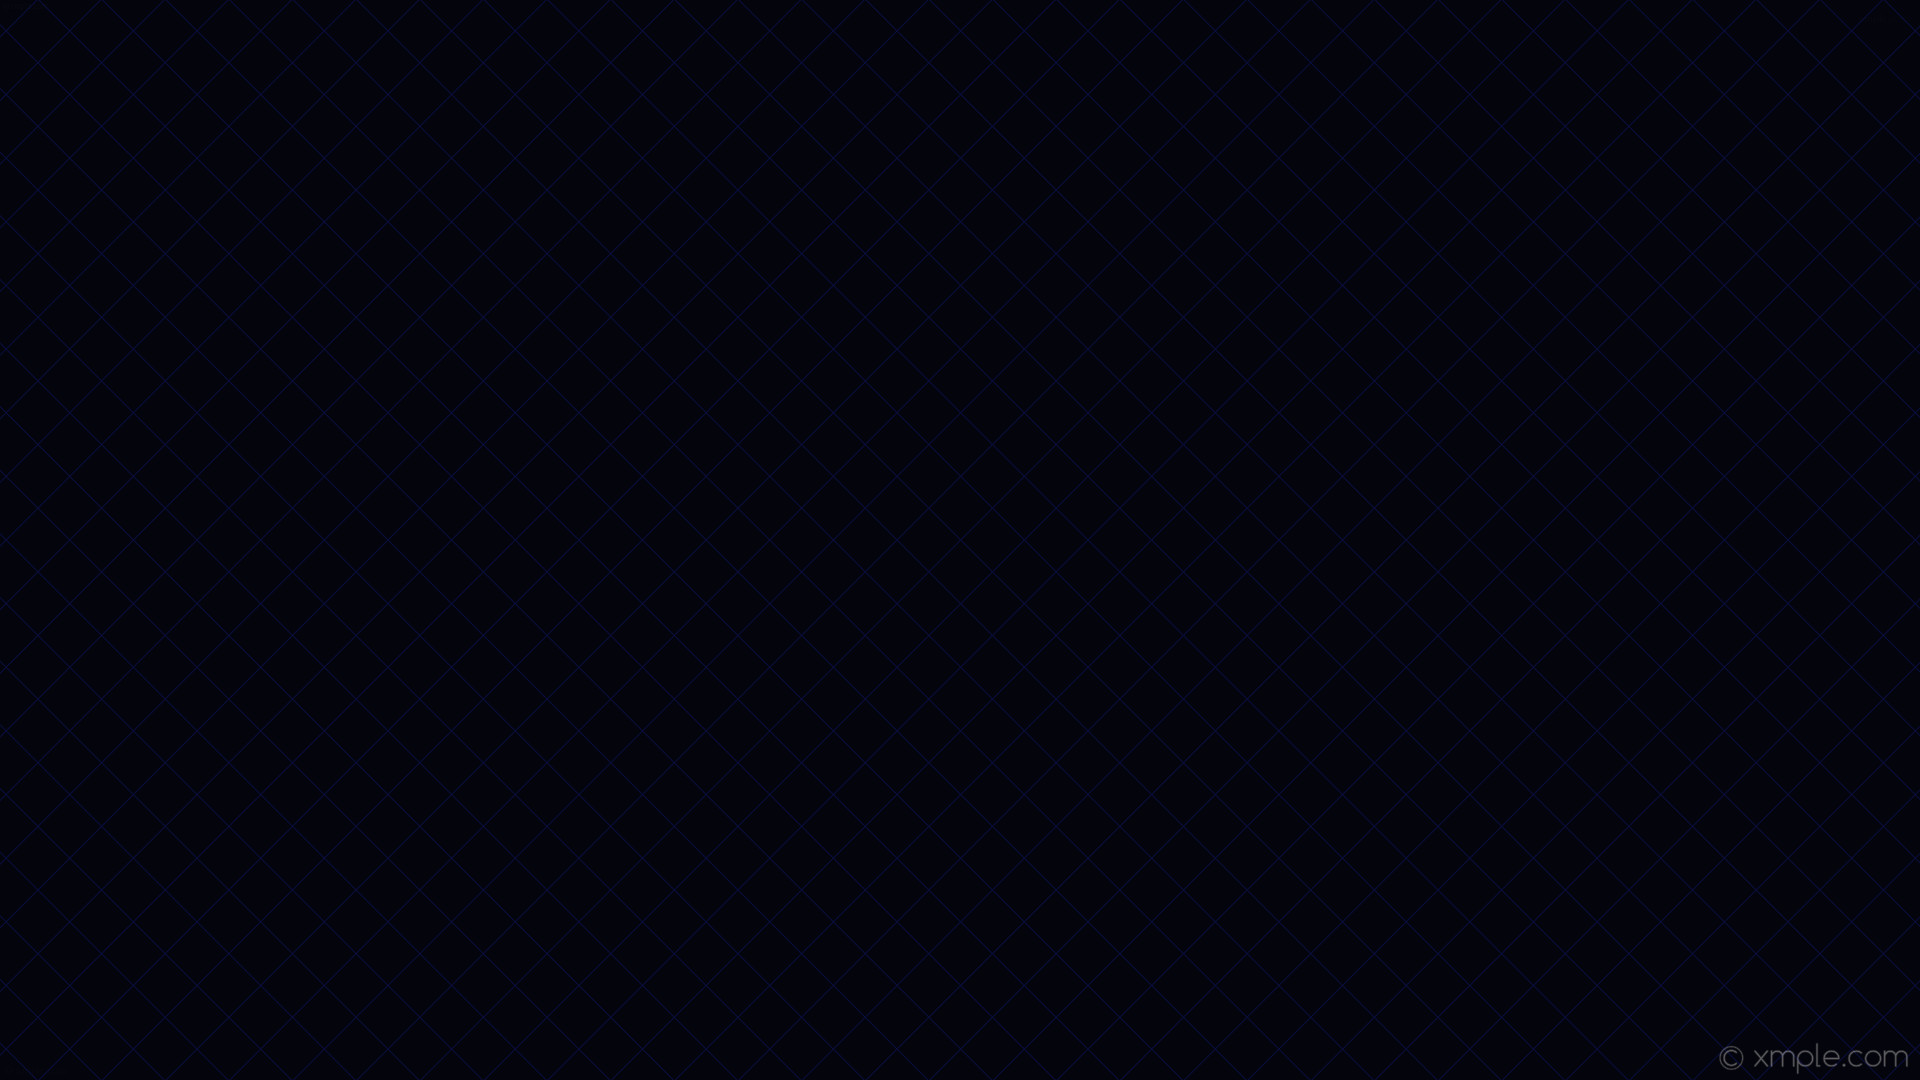 wallpaper graph paper blue black grid dark blue #04040c #0c1250 45Â° 1px 45px